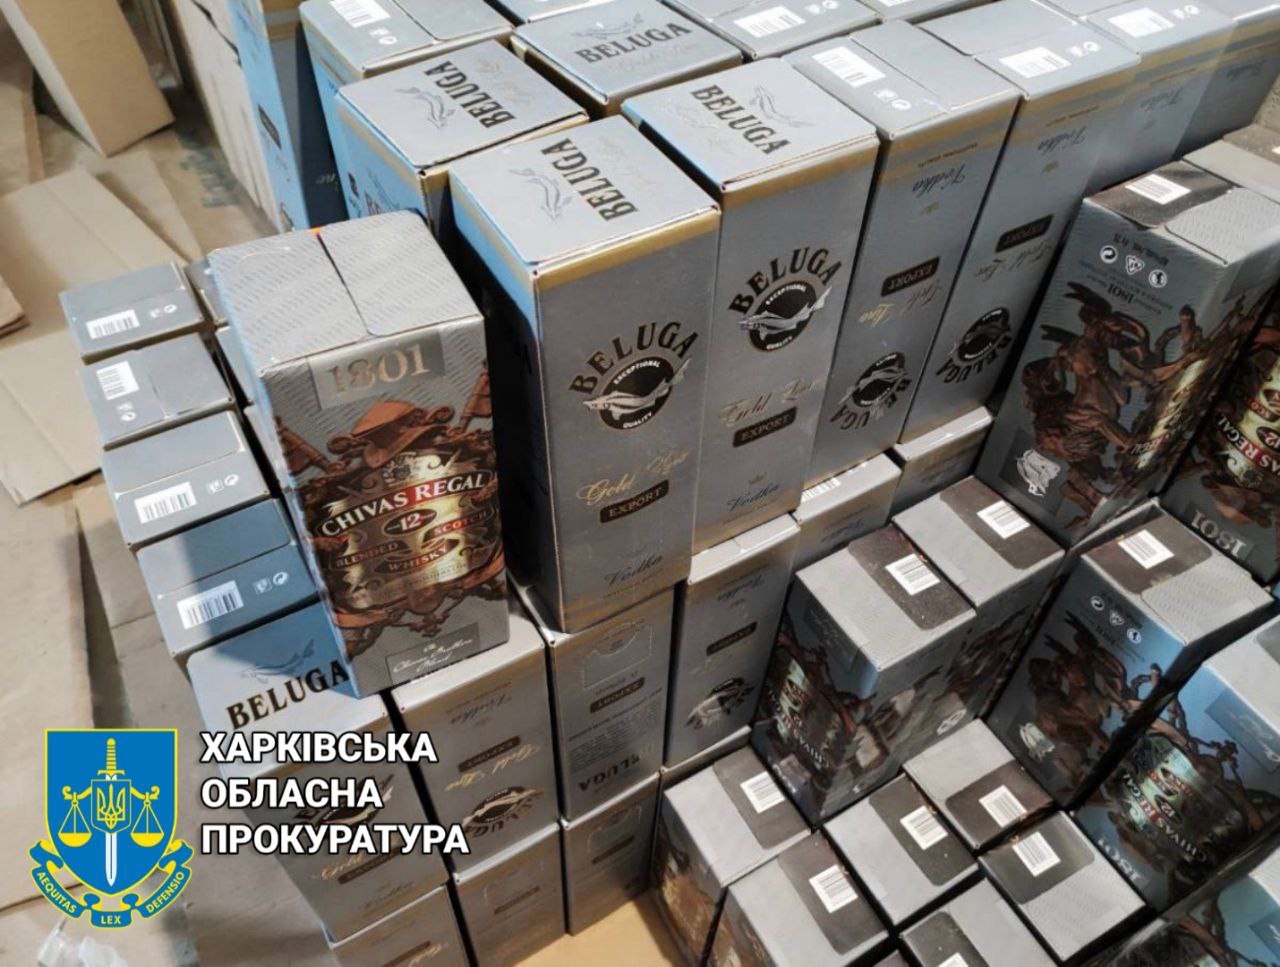 В гаражах Харькова готовили фальсификат под видом элитного алкоголя